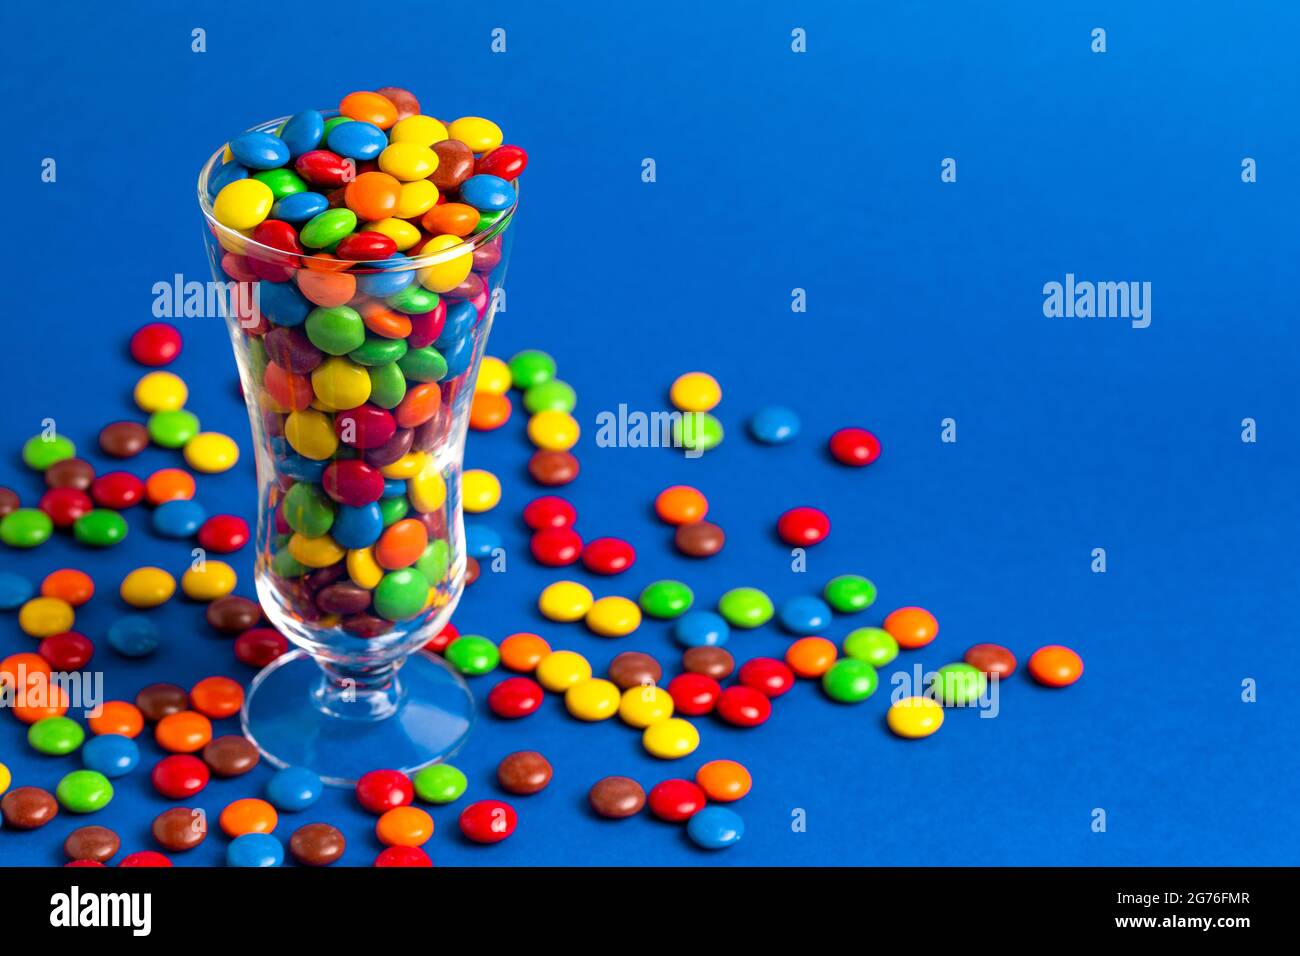 Un verre rempli de boutons de chocolat enrobés de bonbons de couleur arc-en-ciel Banque D'Images